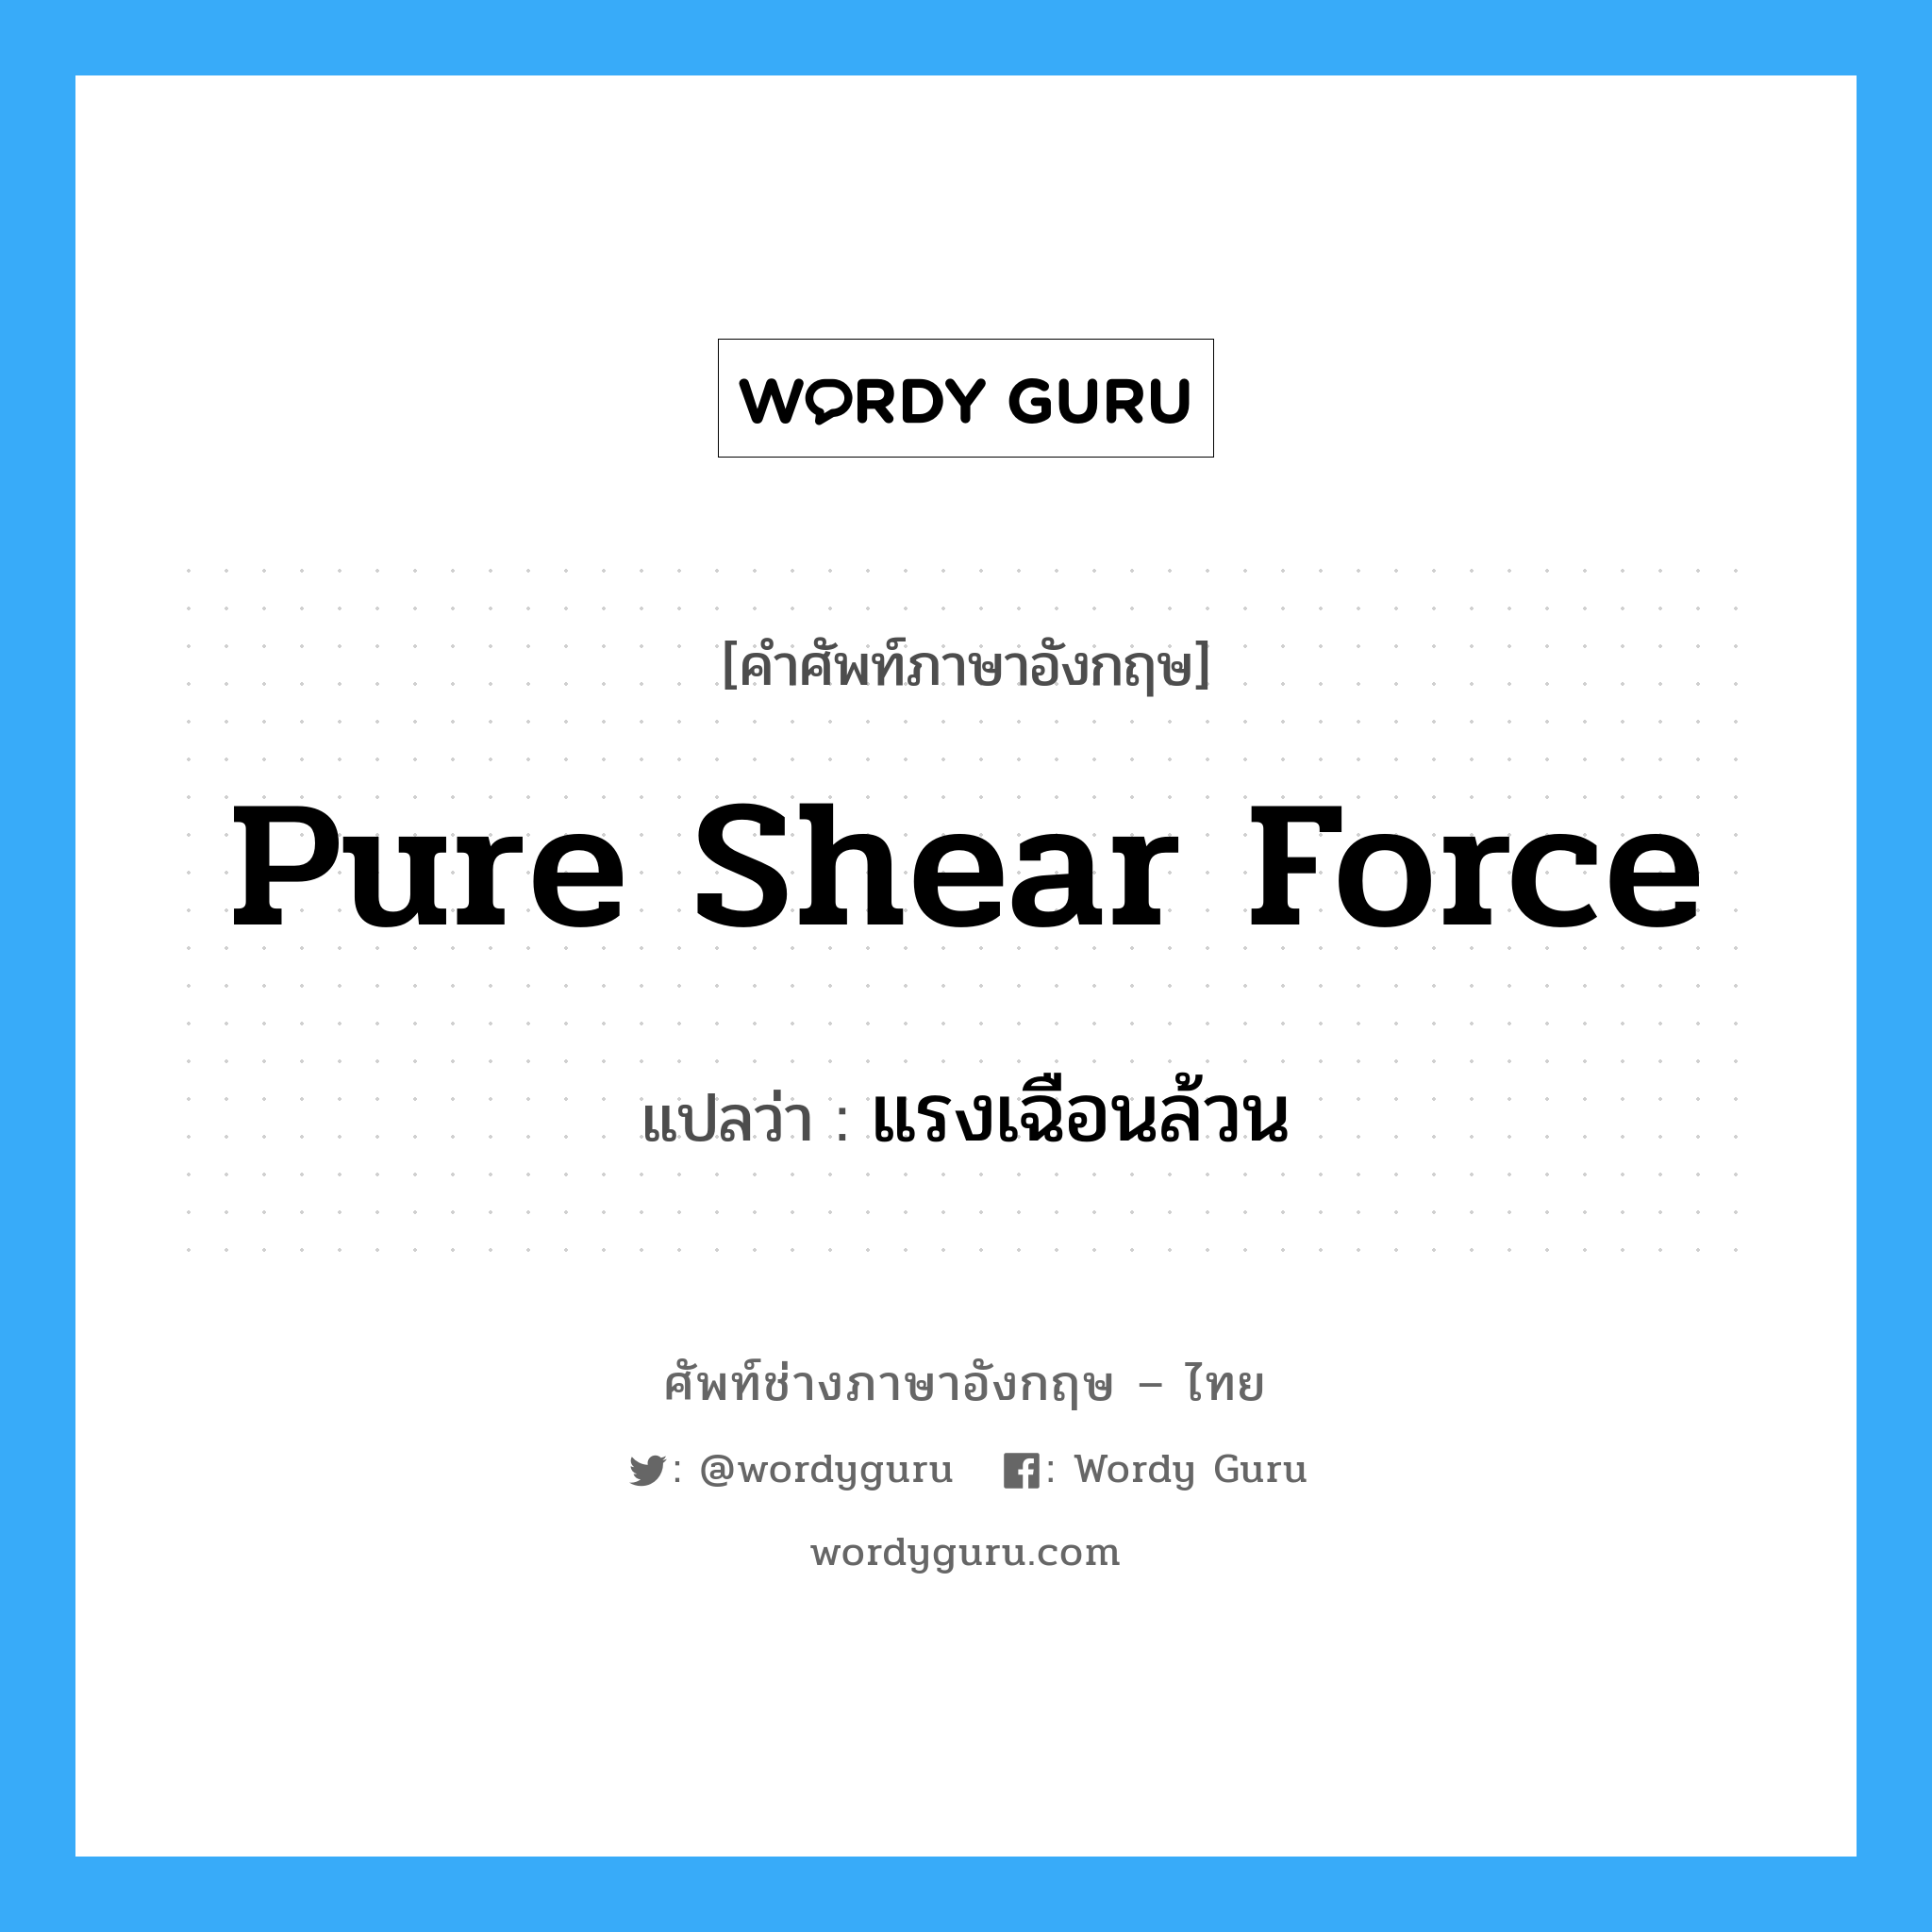 Pure Shear Force แปลว่า?, คำศัพท์ช่างภาษาอังกฤษ - ไทย Pure Shear Force คำศัพท์ภาษาอังกฤษ Pure Shear Force แปลว่า แรงเฉือนล้วน